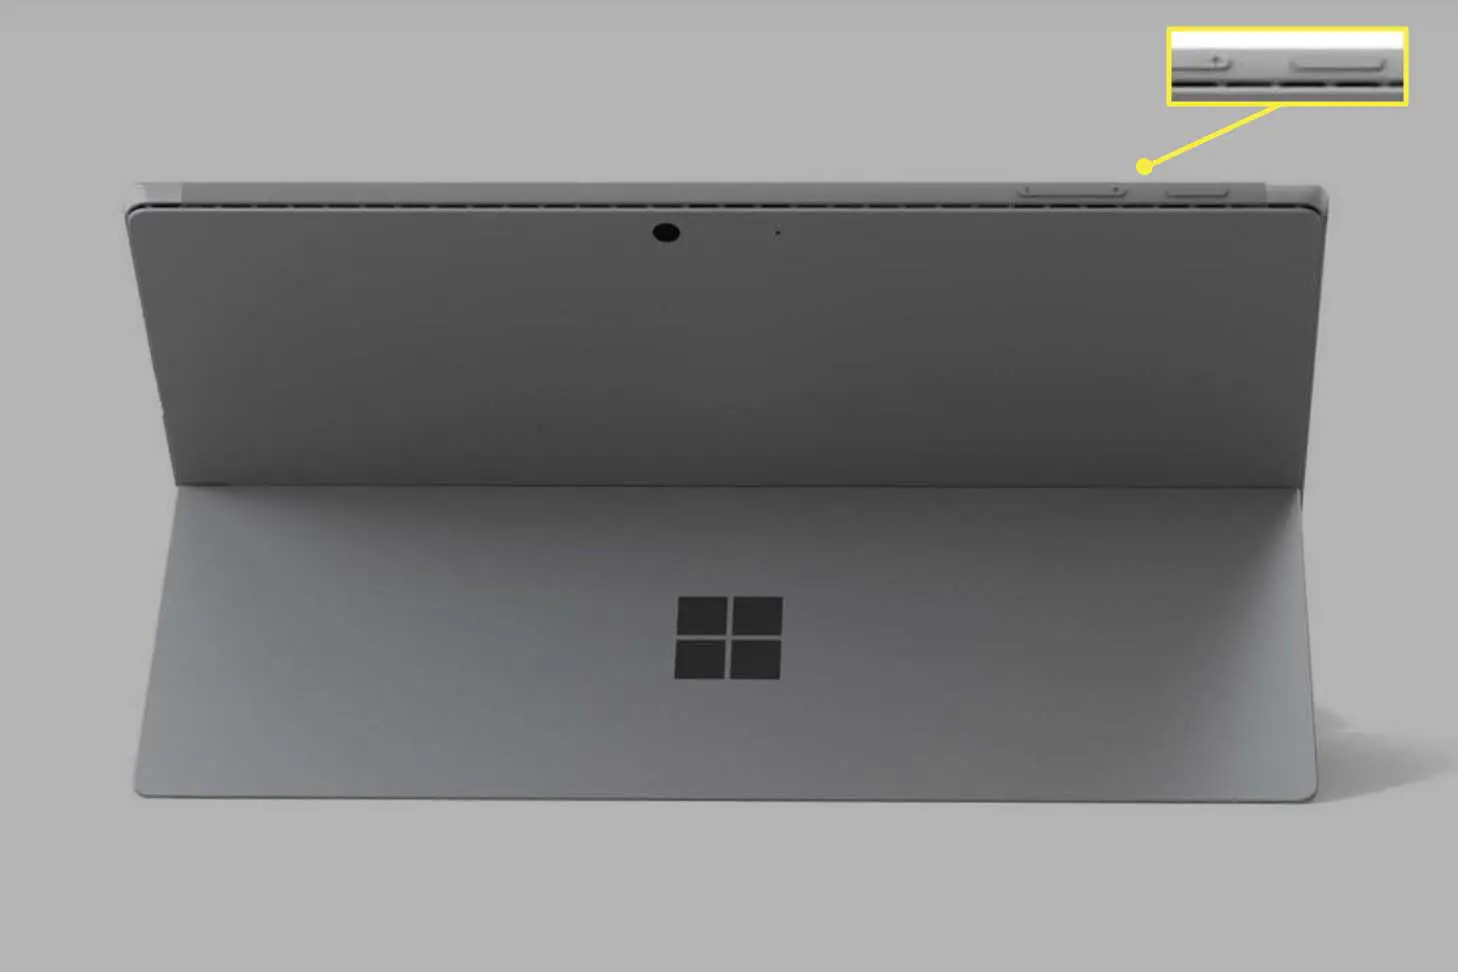 Um Microsoft Surface Pro mostrado na parte traseira com botões liga / desliga e aumentar volume visíveis.